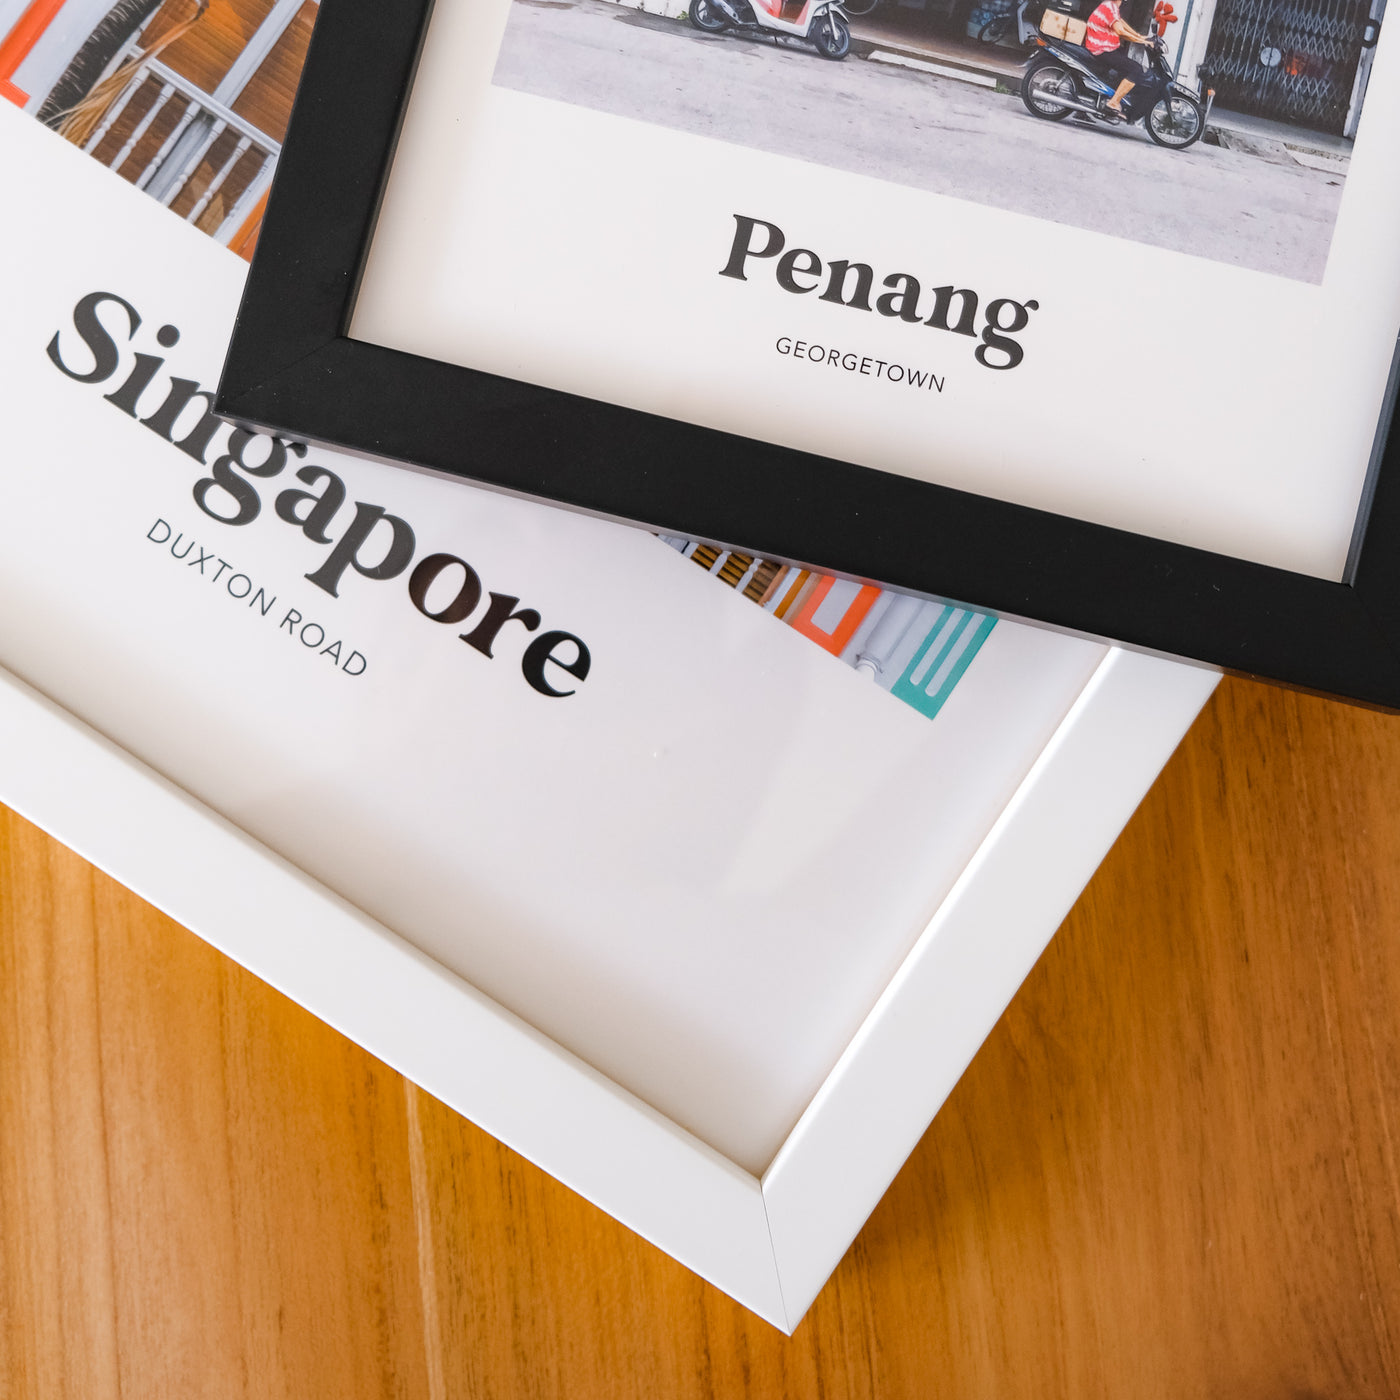 Singapore - Marina Bay Sands Print